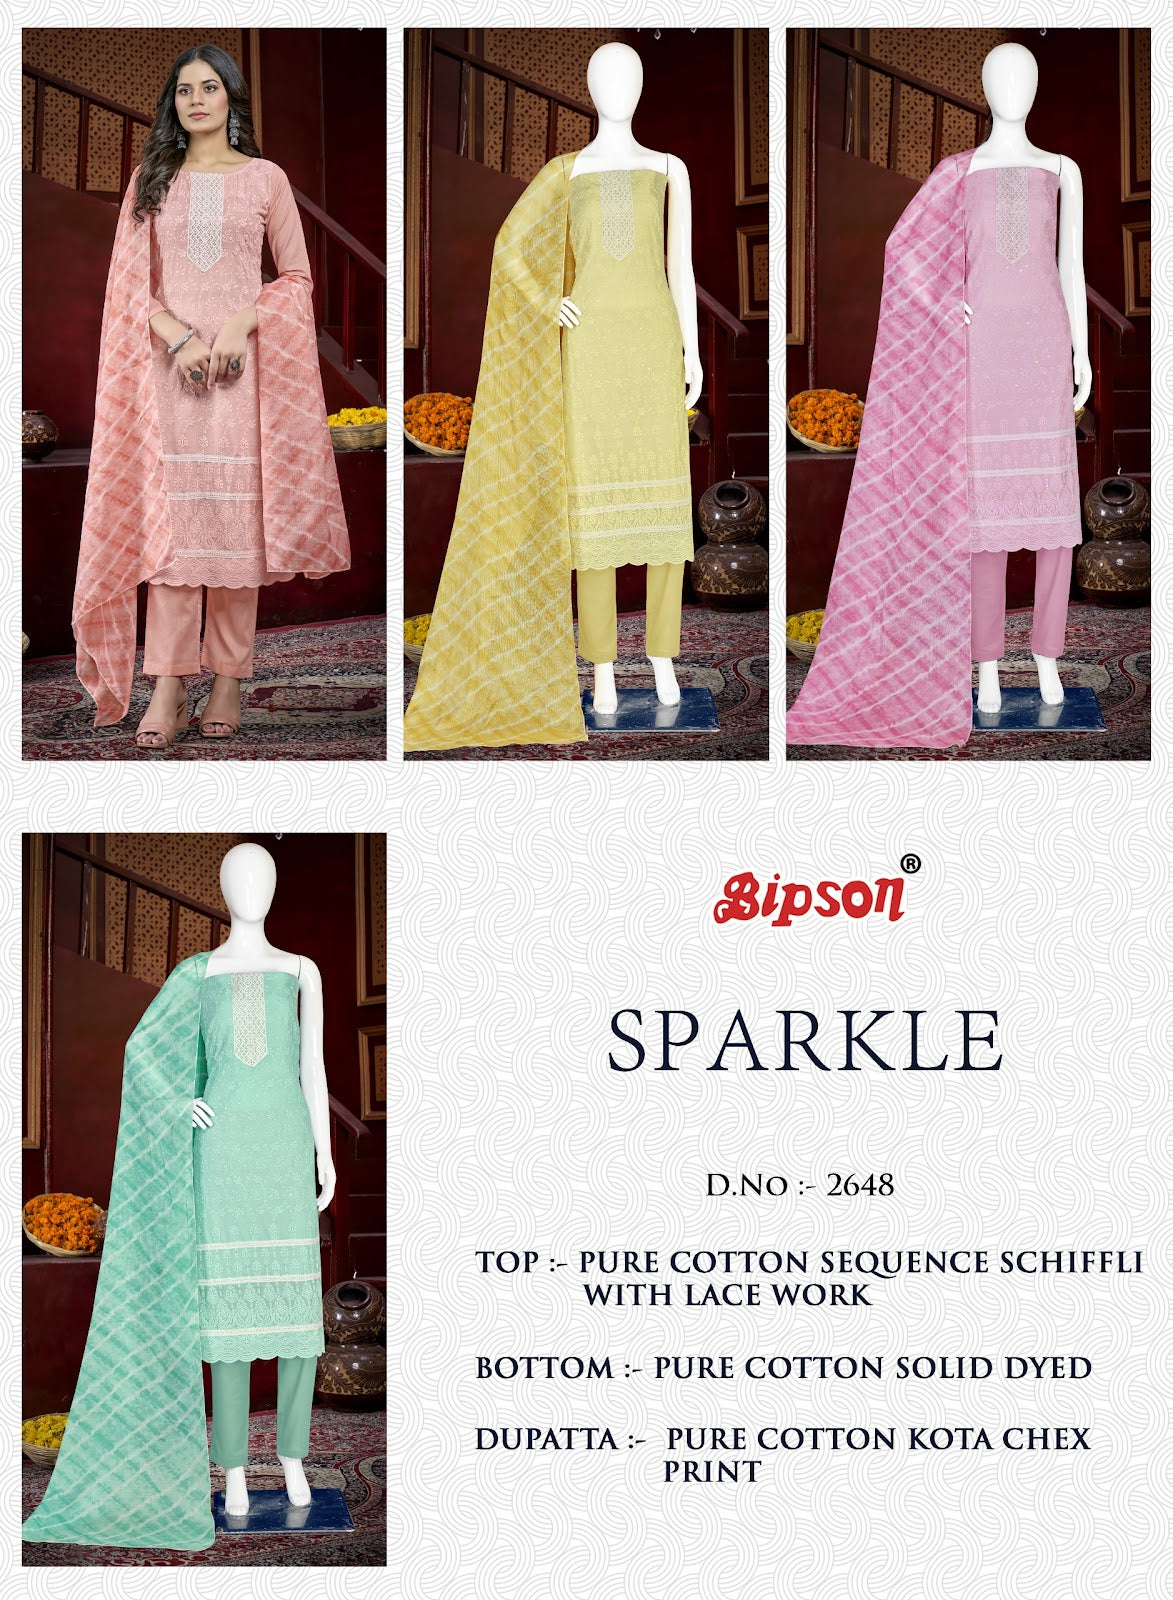 Sparkle 2648 Bipson Prints Pure Cotton Pant Style Suits Wholesale